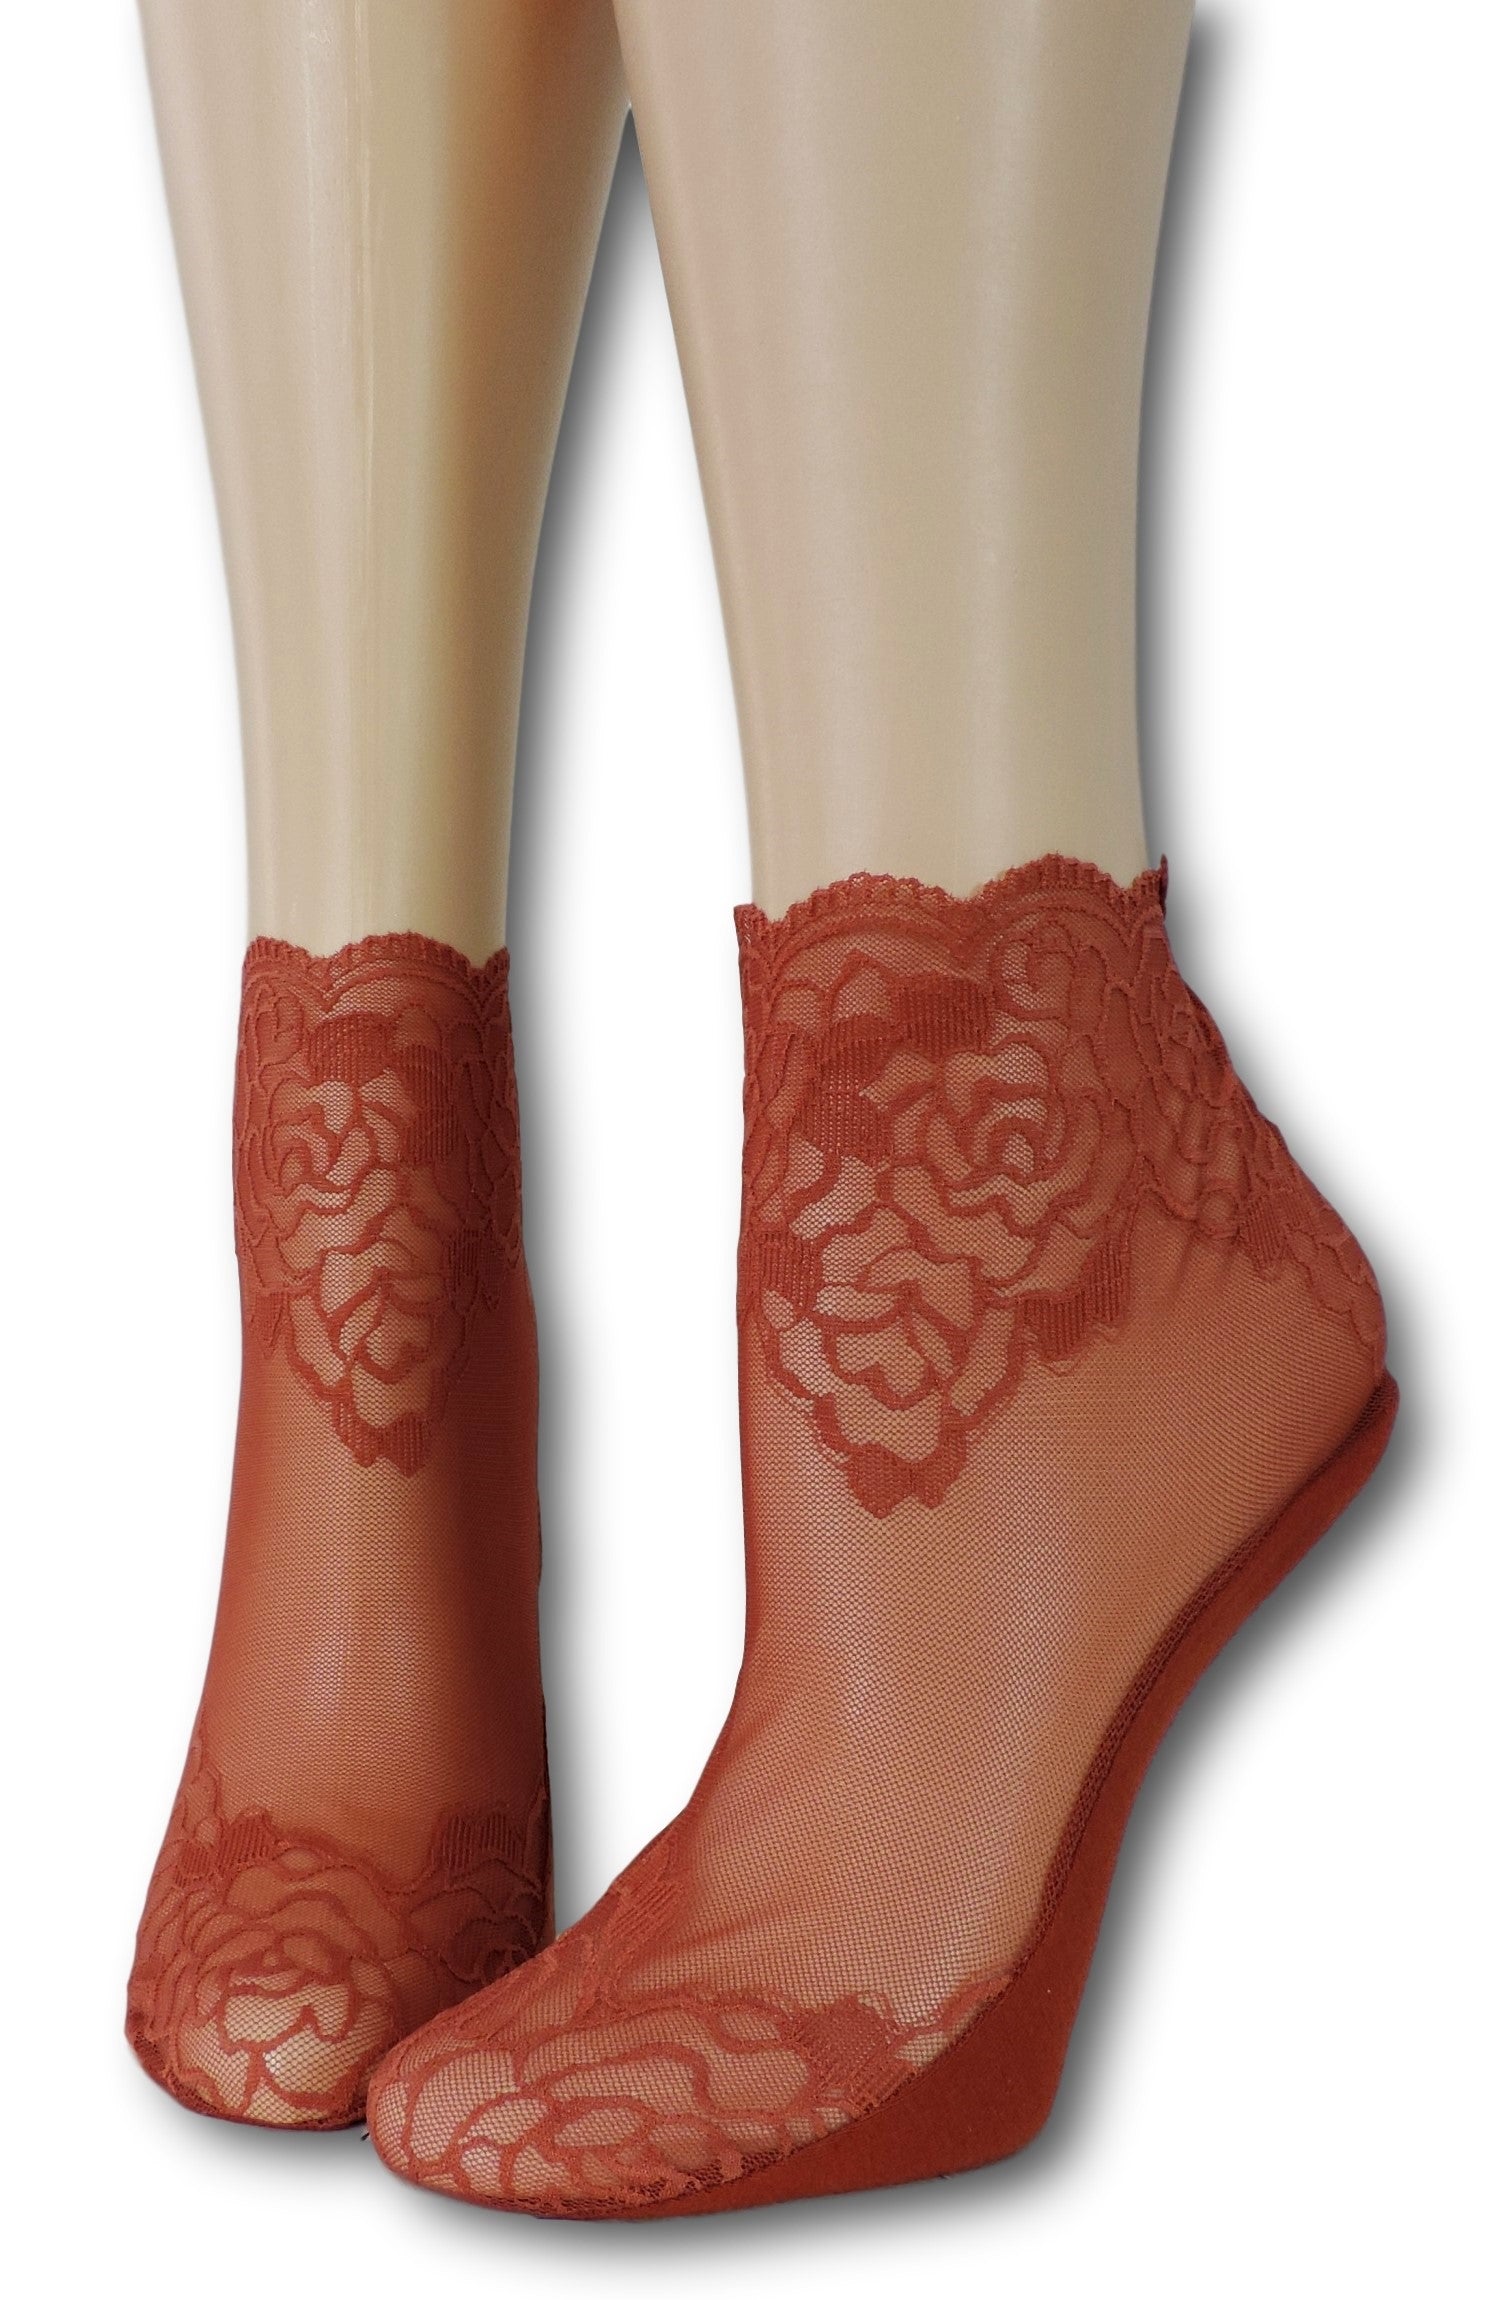 Red Rose Ankle Sheer Socks